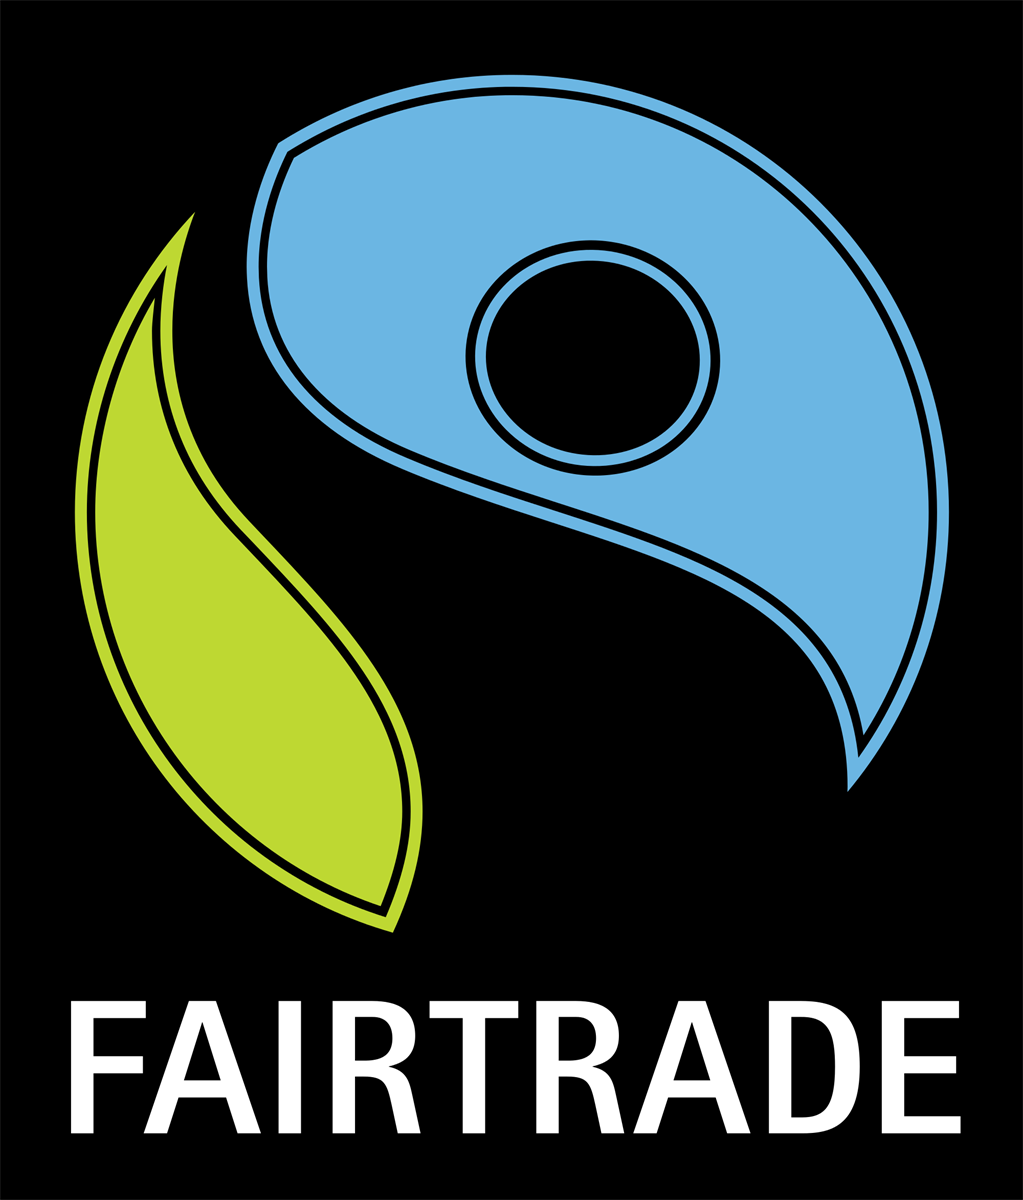 the fairtrade logo